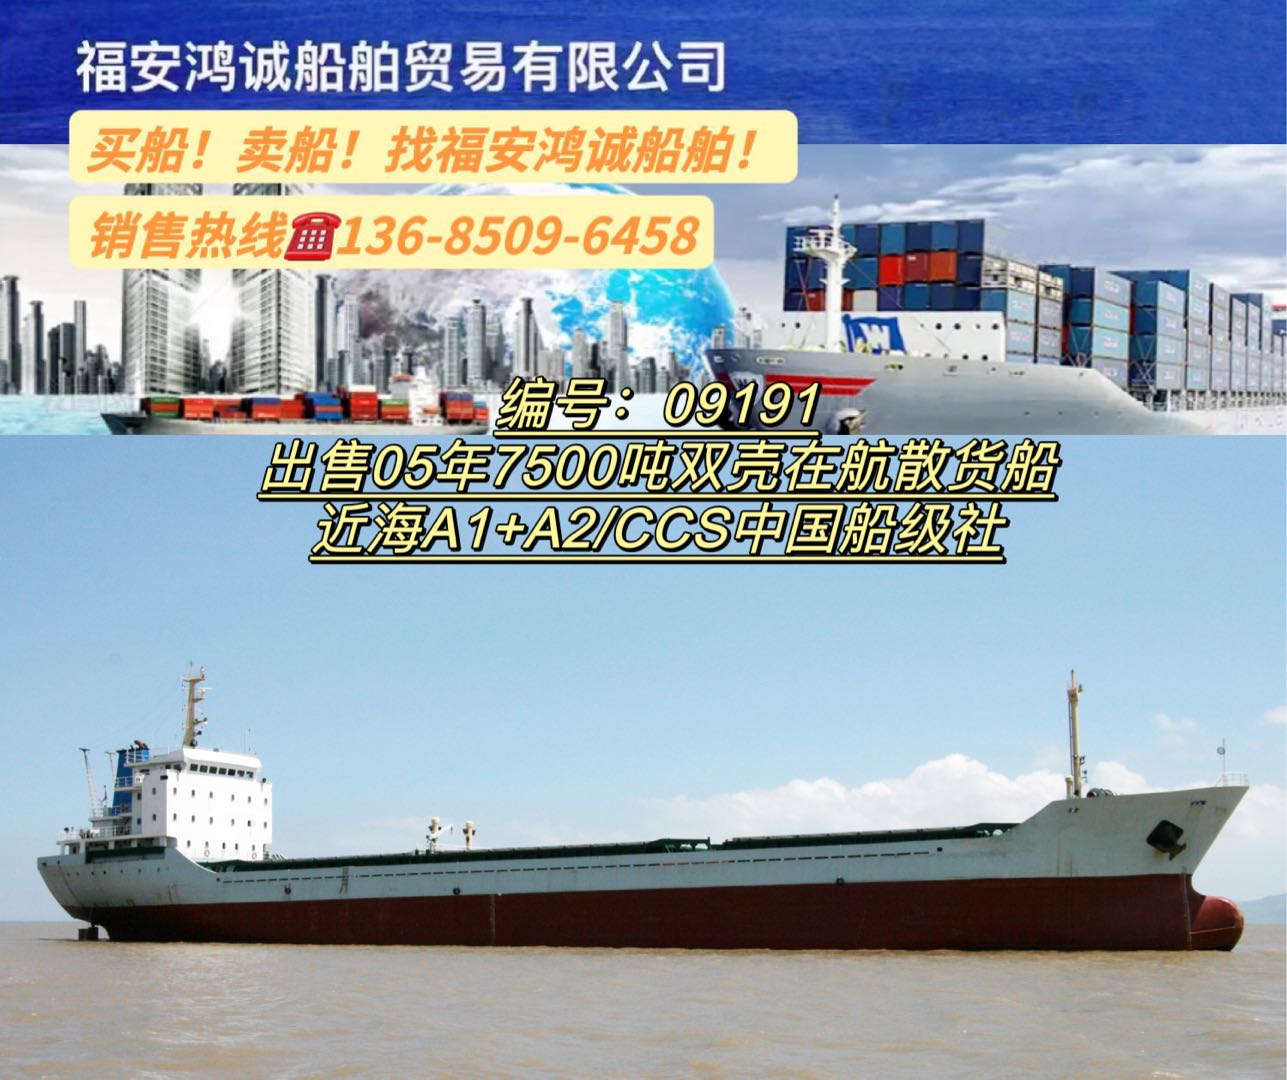 出售05年7500吨双壳散货船